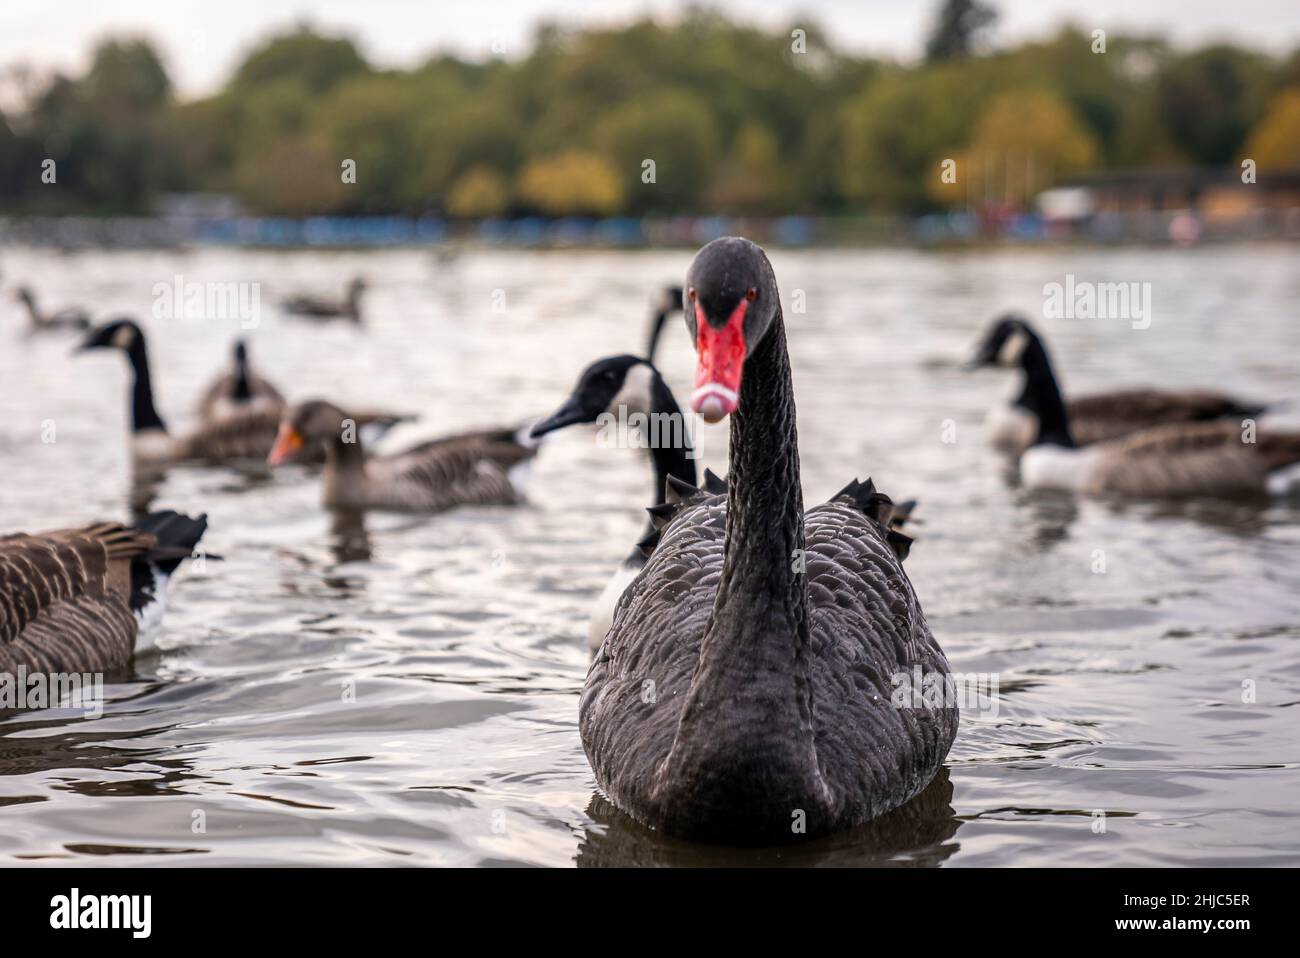 Bel cigno nero con becco rosso che galleggia sull'acqua del lago nel parco cittadino Foto Stock